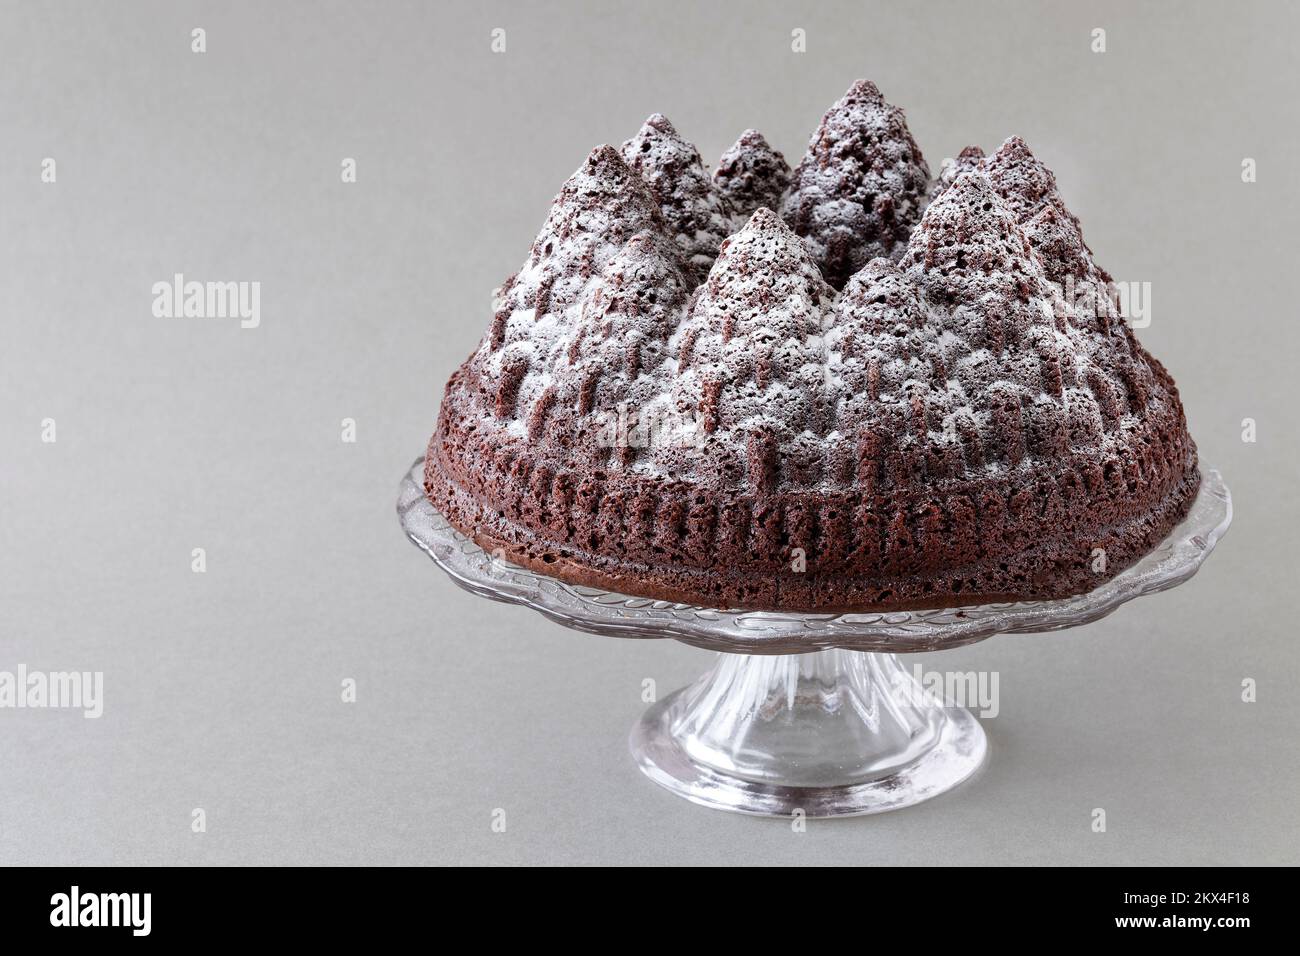 Un pastel de chocolate navideño. La torta se hace usando un molde de bundt para formar la masa de la torta en las formas del árbol. Una aspersión de azúcar glaseado lo cubre. Foto de stock